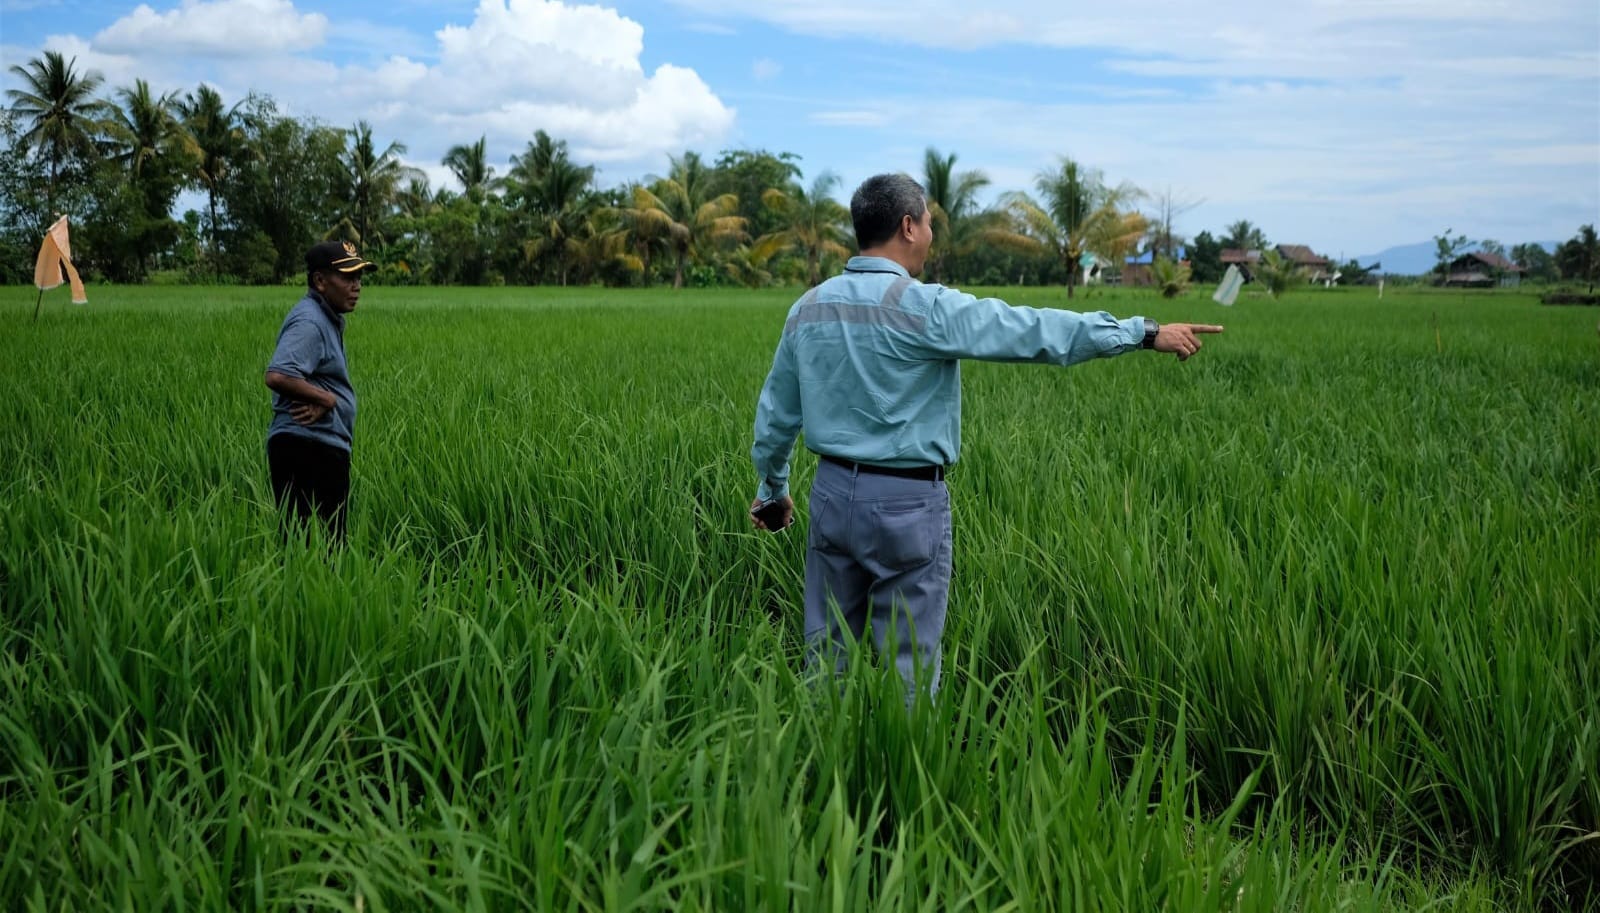 PT Vale Wujudkan Kemandiran Masyarakat di Area Pemberdayaan Melalui Pertanian Ramah Lingkungan